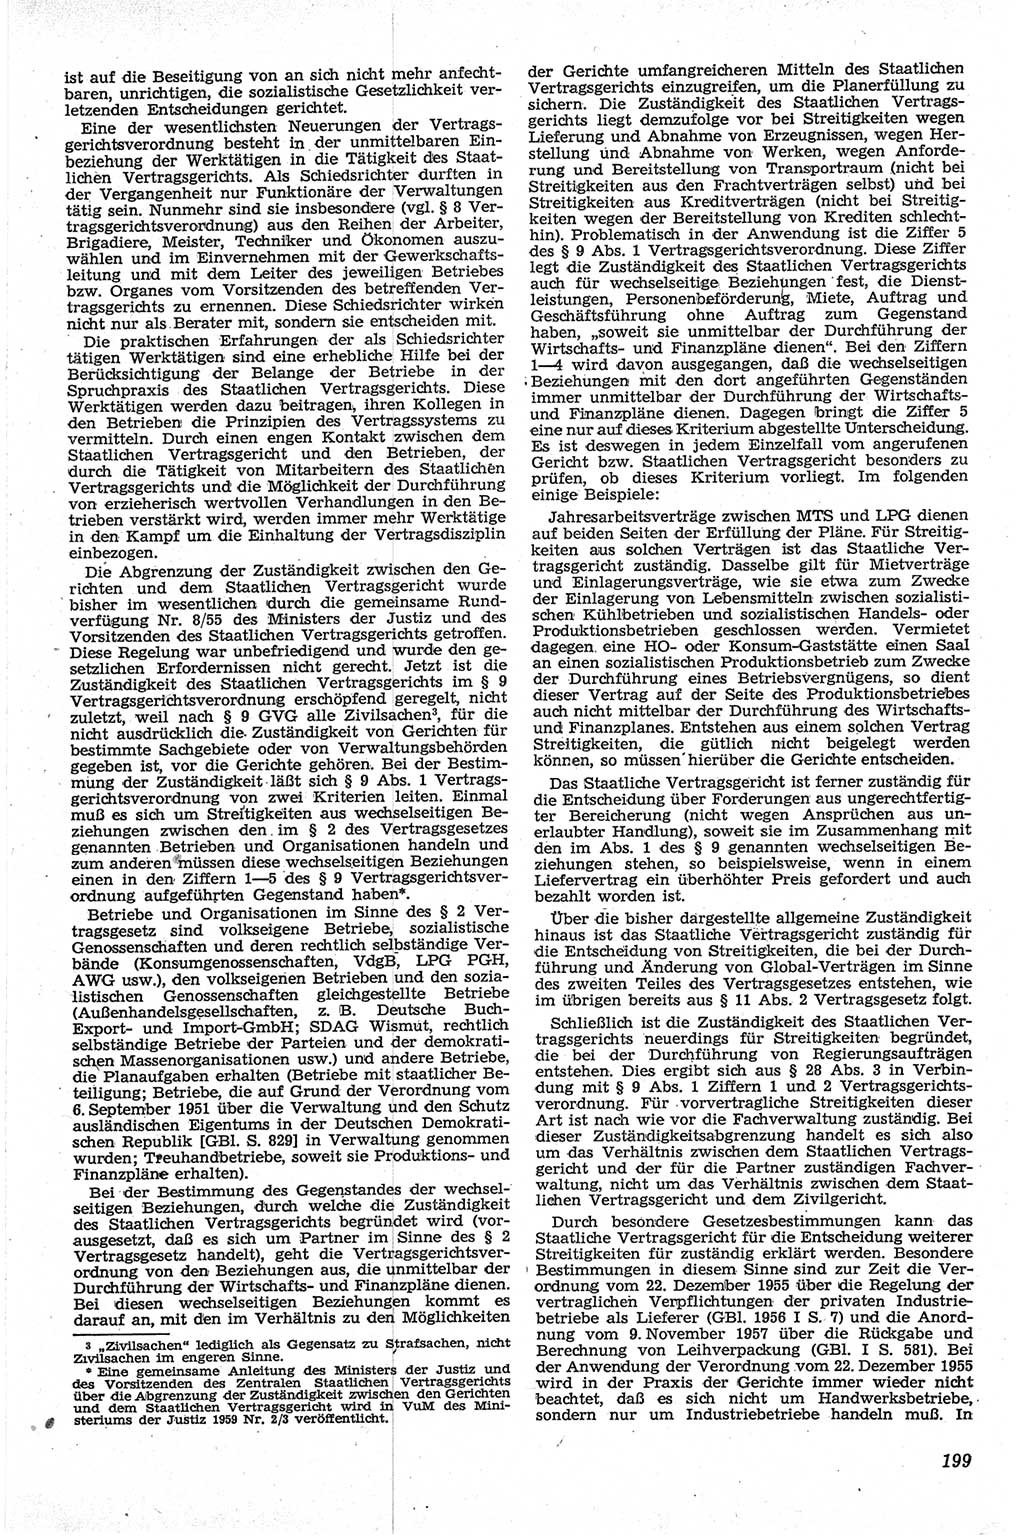 Neue Justiz (NJ), Zeitschrift für Recht und Rechtswissenschaft [Deutsche Demokratische Republik (DDR)], 13. Jahrgang 1959, Seite 199 (NJ DDR 1959, S. 199)